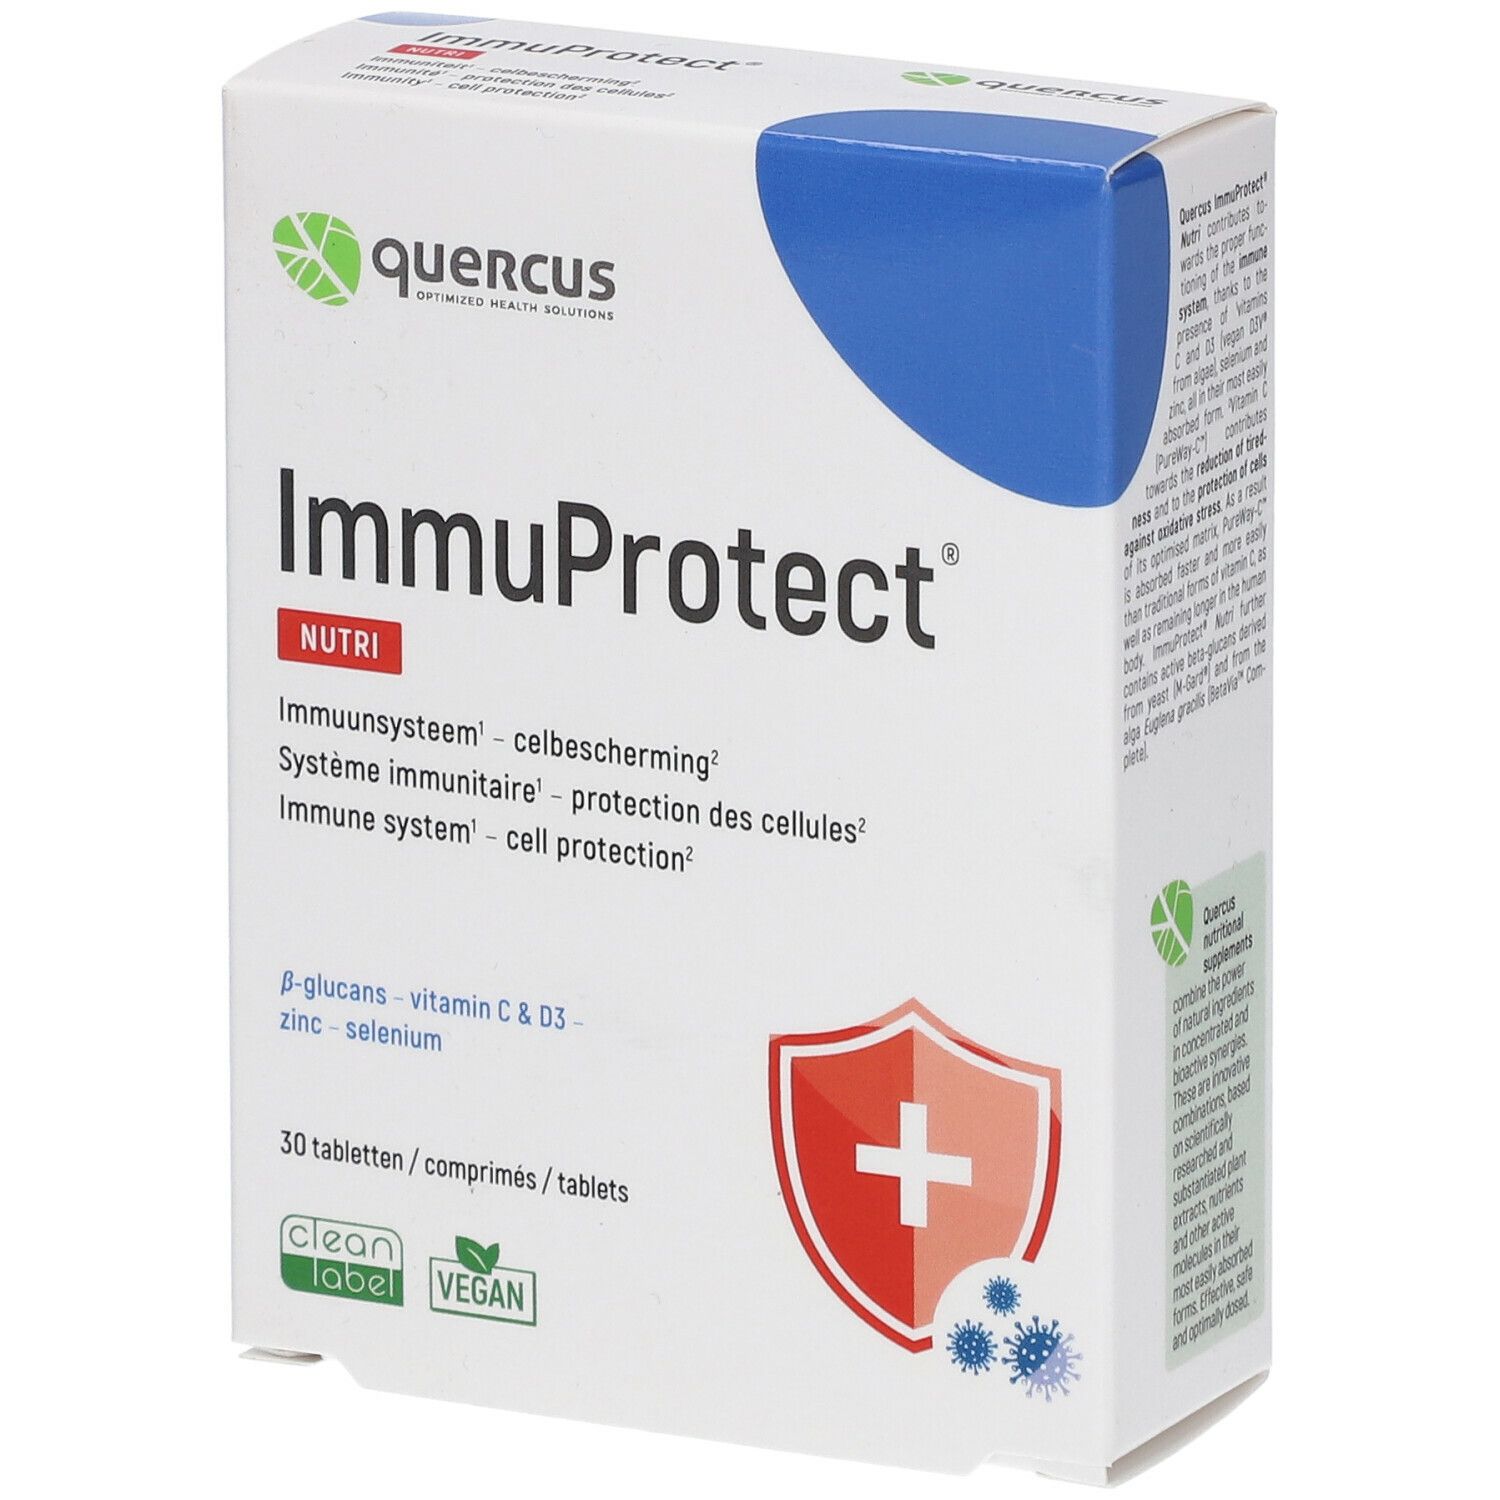 Quercus Immuprotect® Nutri